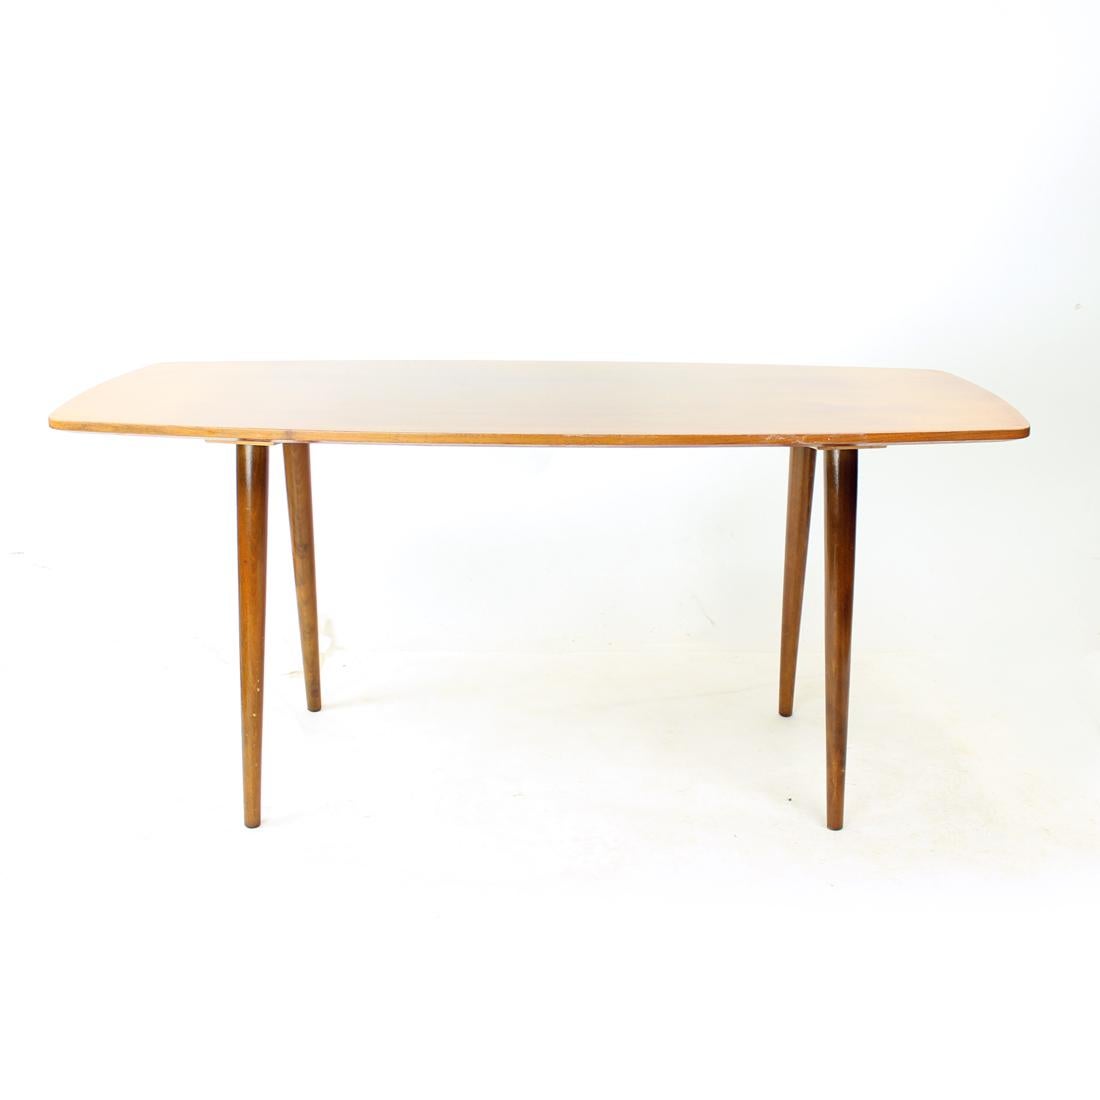 Magnifique table basse vintage de l'époque du design moderne du milieu du siècle dernier. Absolument typique des designs des années 60. La table est fabriquée en chêne avec des pieds en chêne. Le plateau supérieur est recouvert d'une laque d'origine